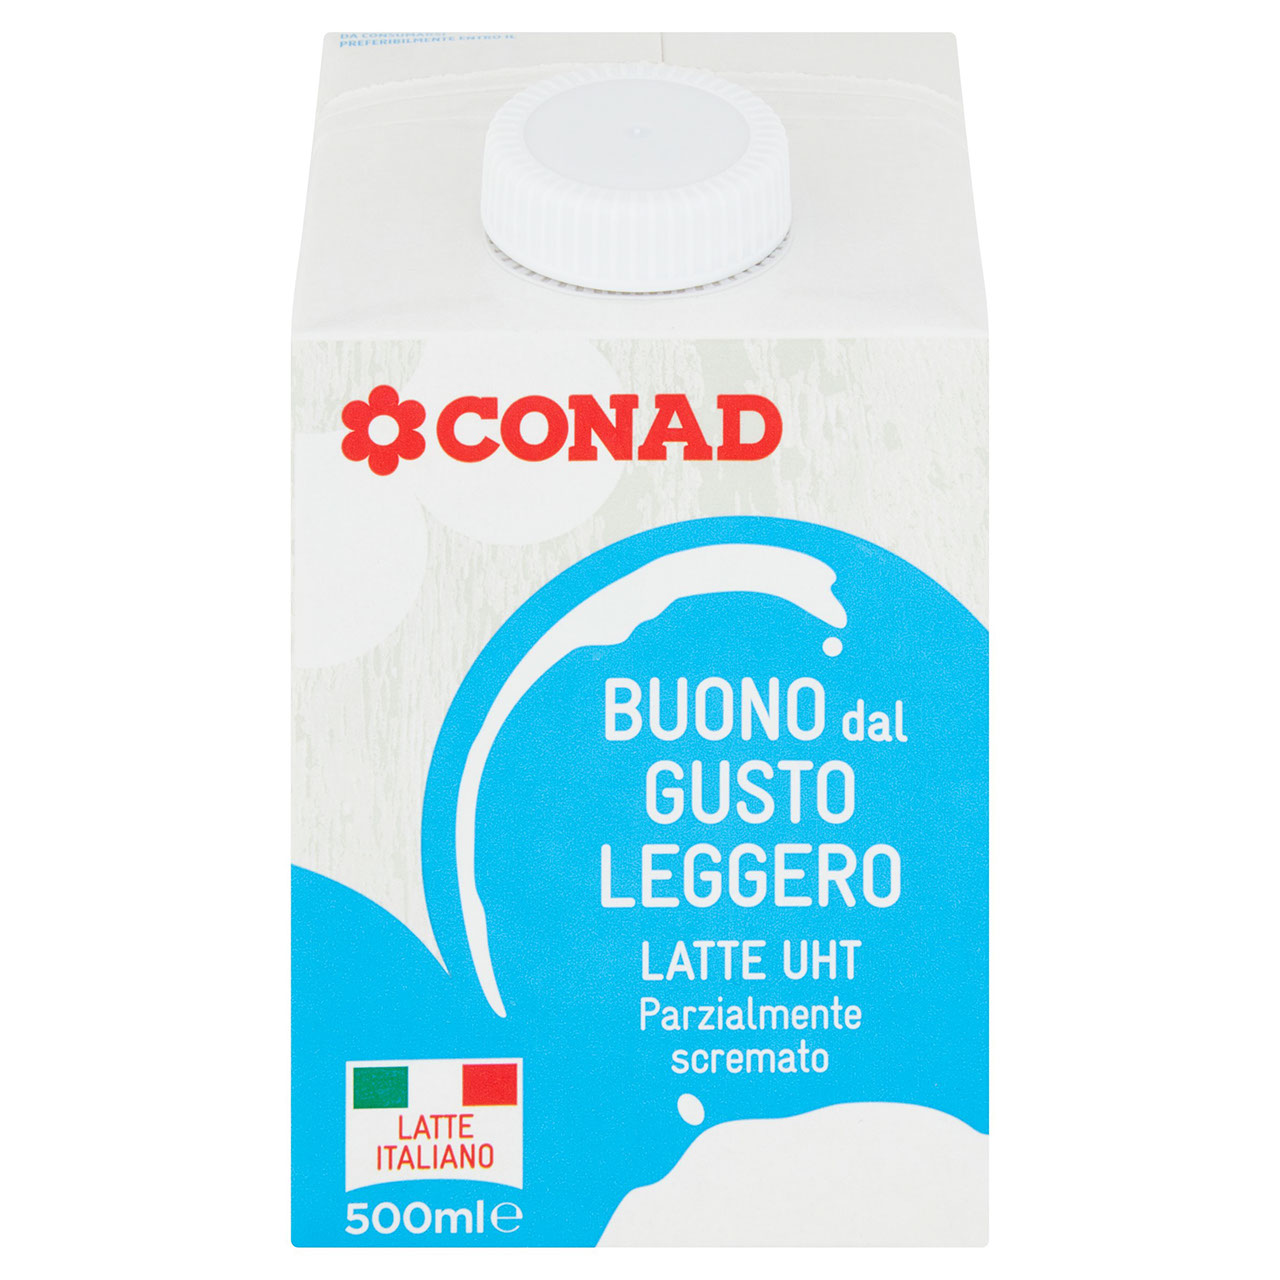 Latte UHT Parzialmente scremato 500 ml Conad | Conad